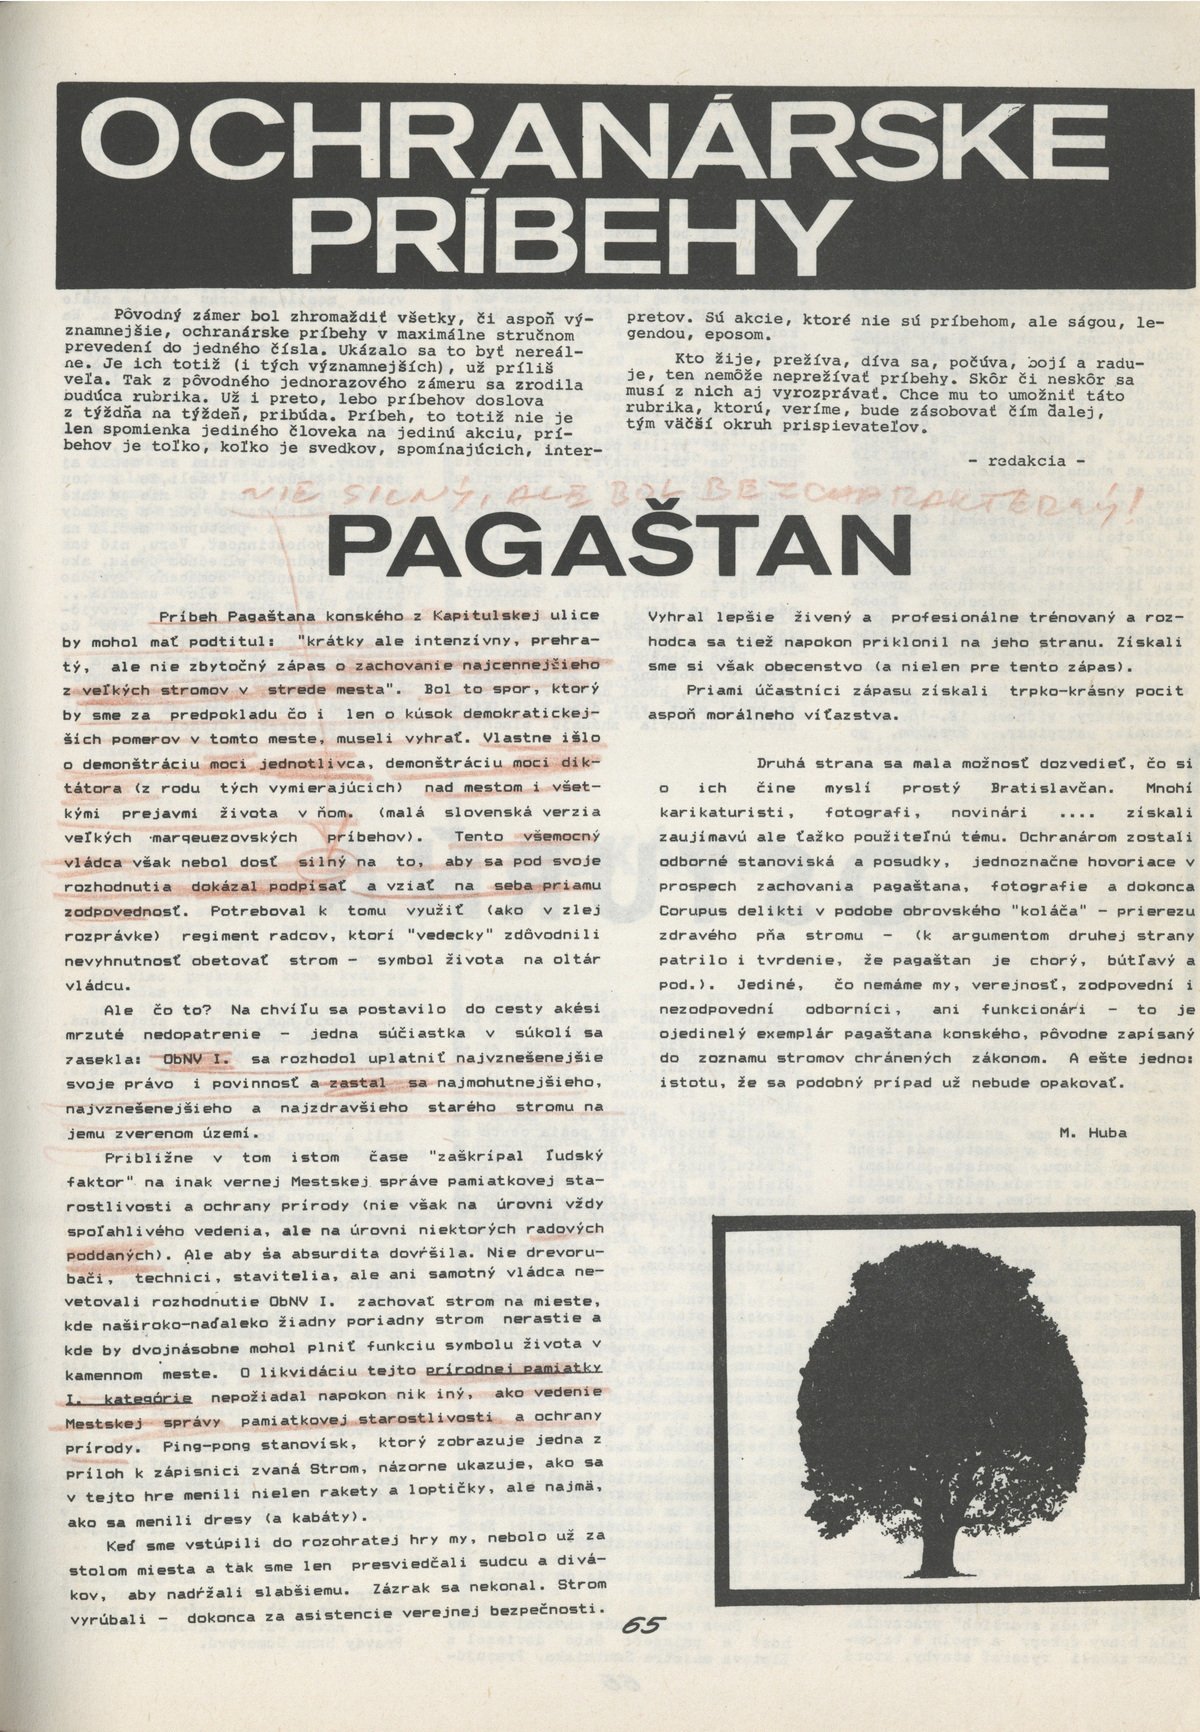 Ochranárske príbehy - Pagaštan. 1988. Ochranca prírody